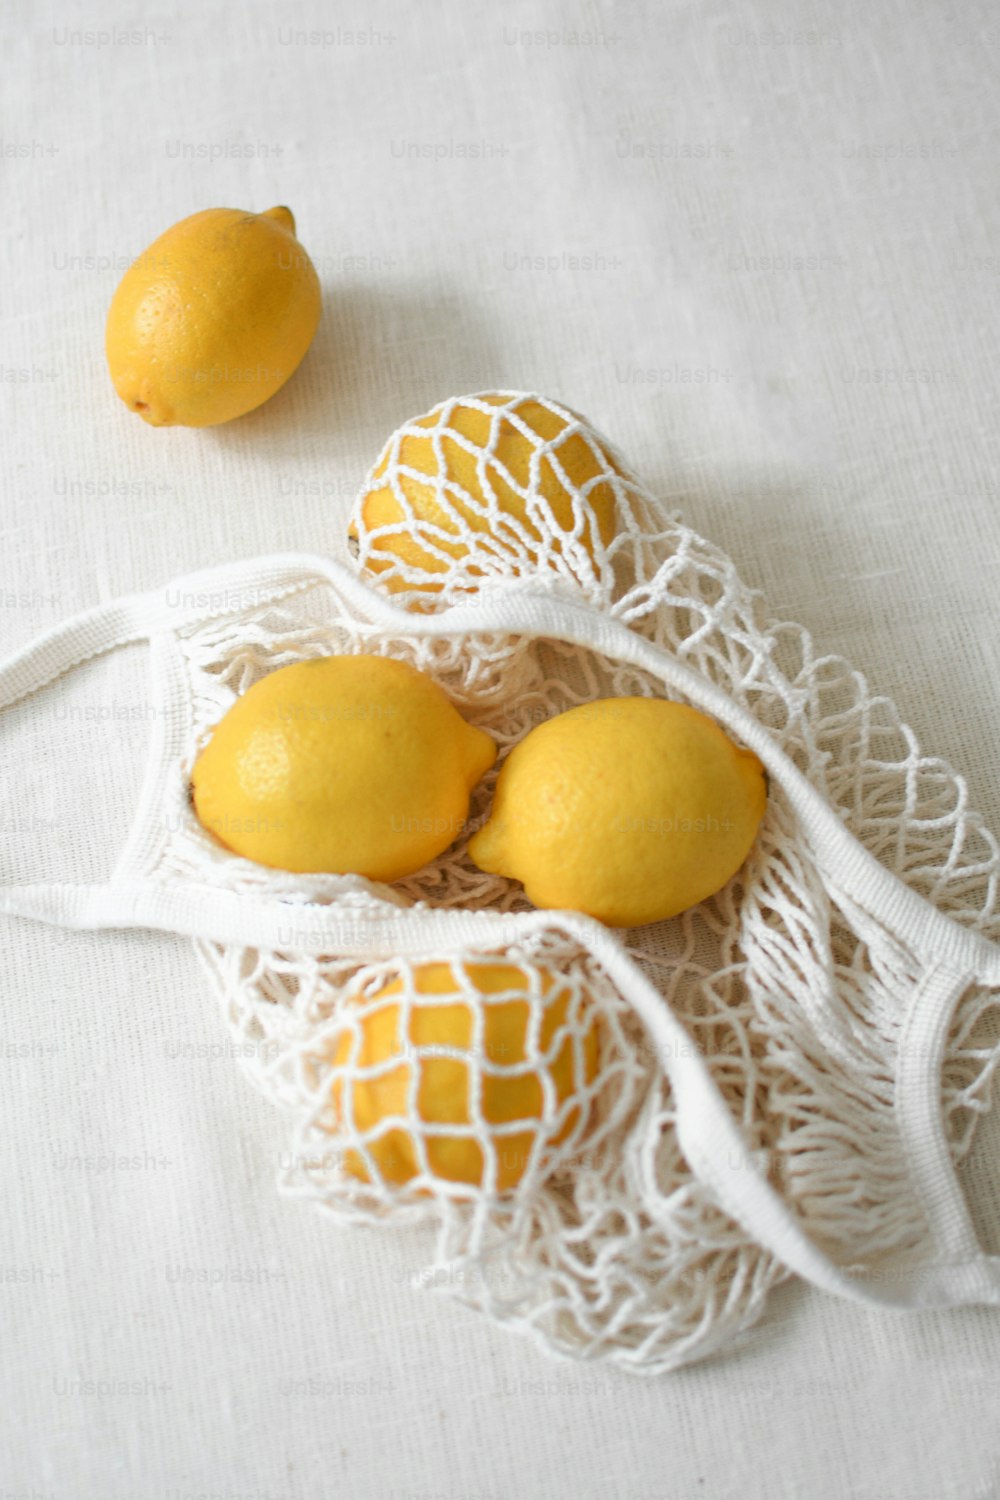 テーブルの上のネットバッグに3つのレモン